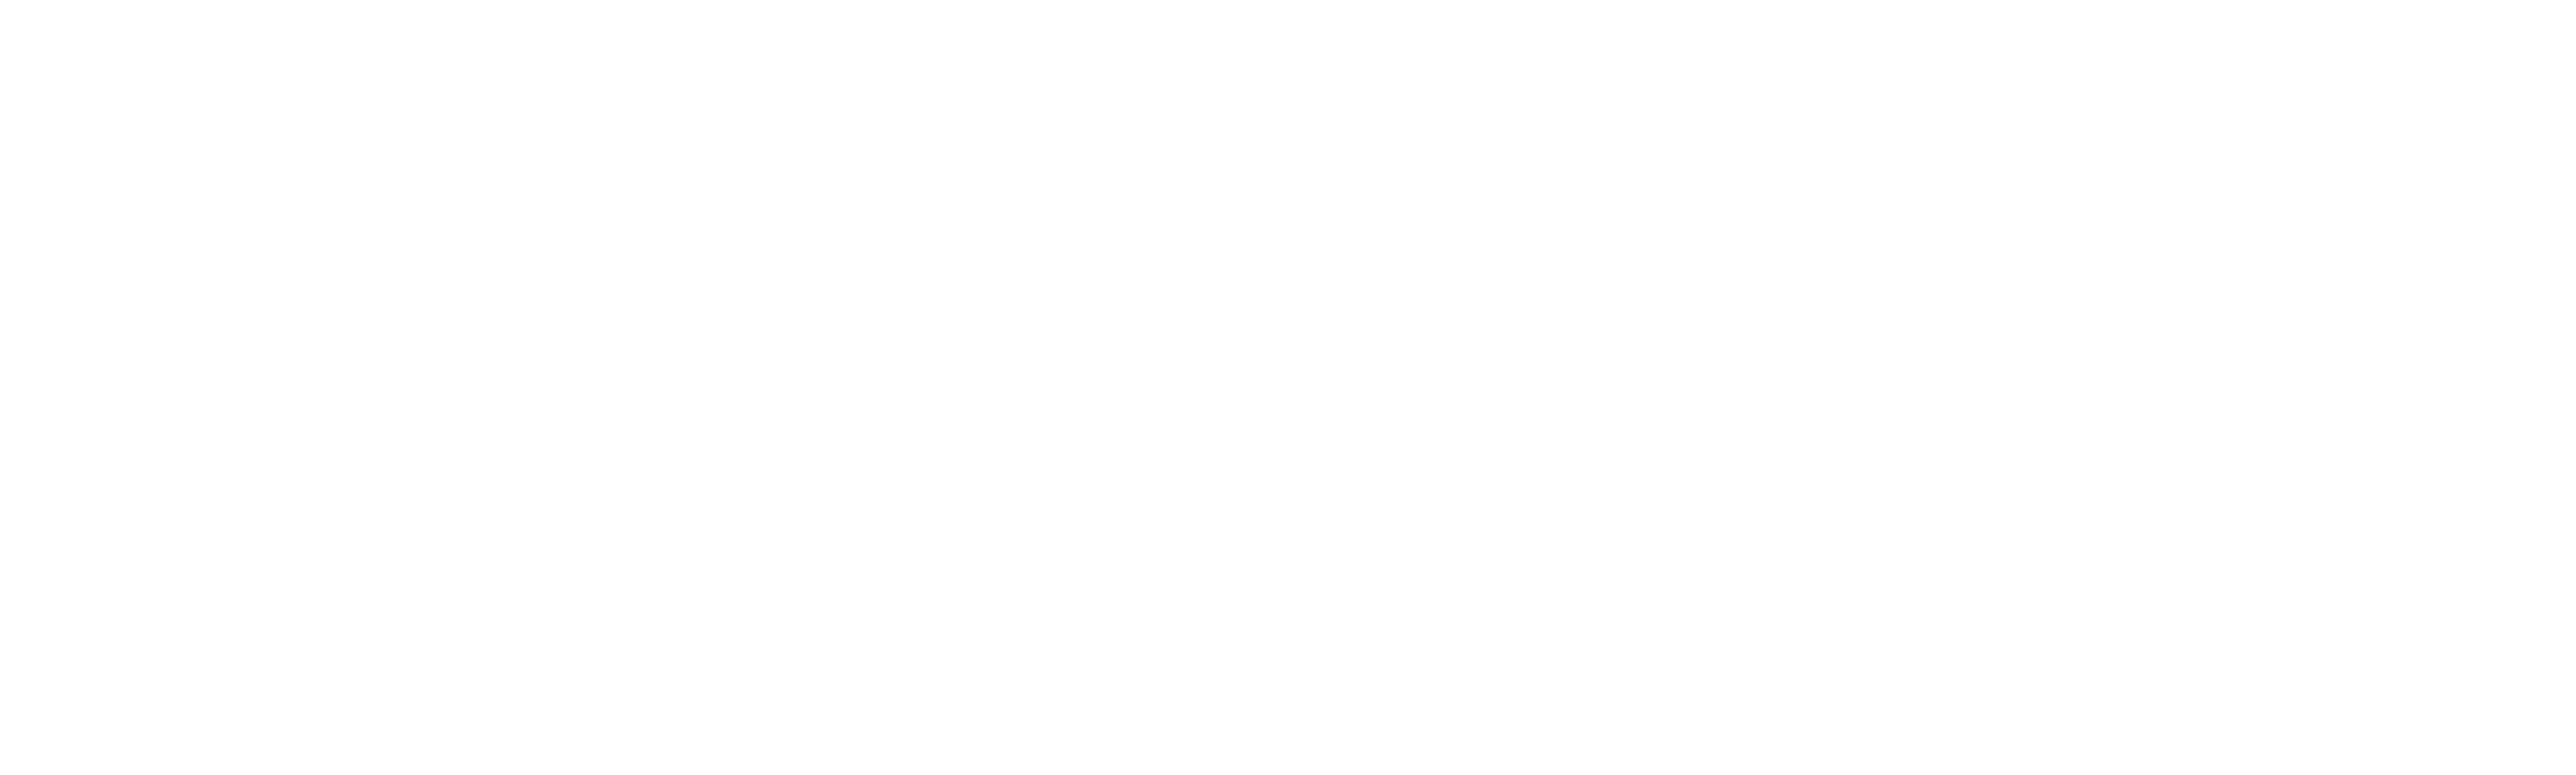 TV Time - Steven Universe Future (TVShow Time)